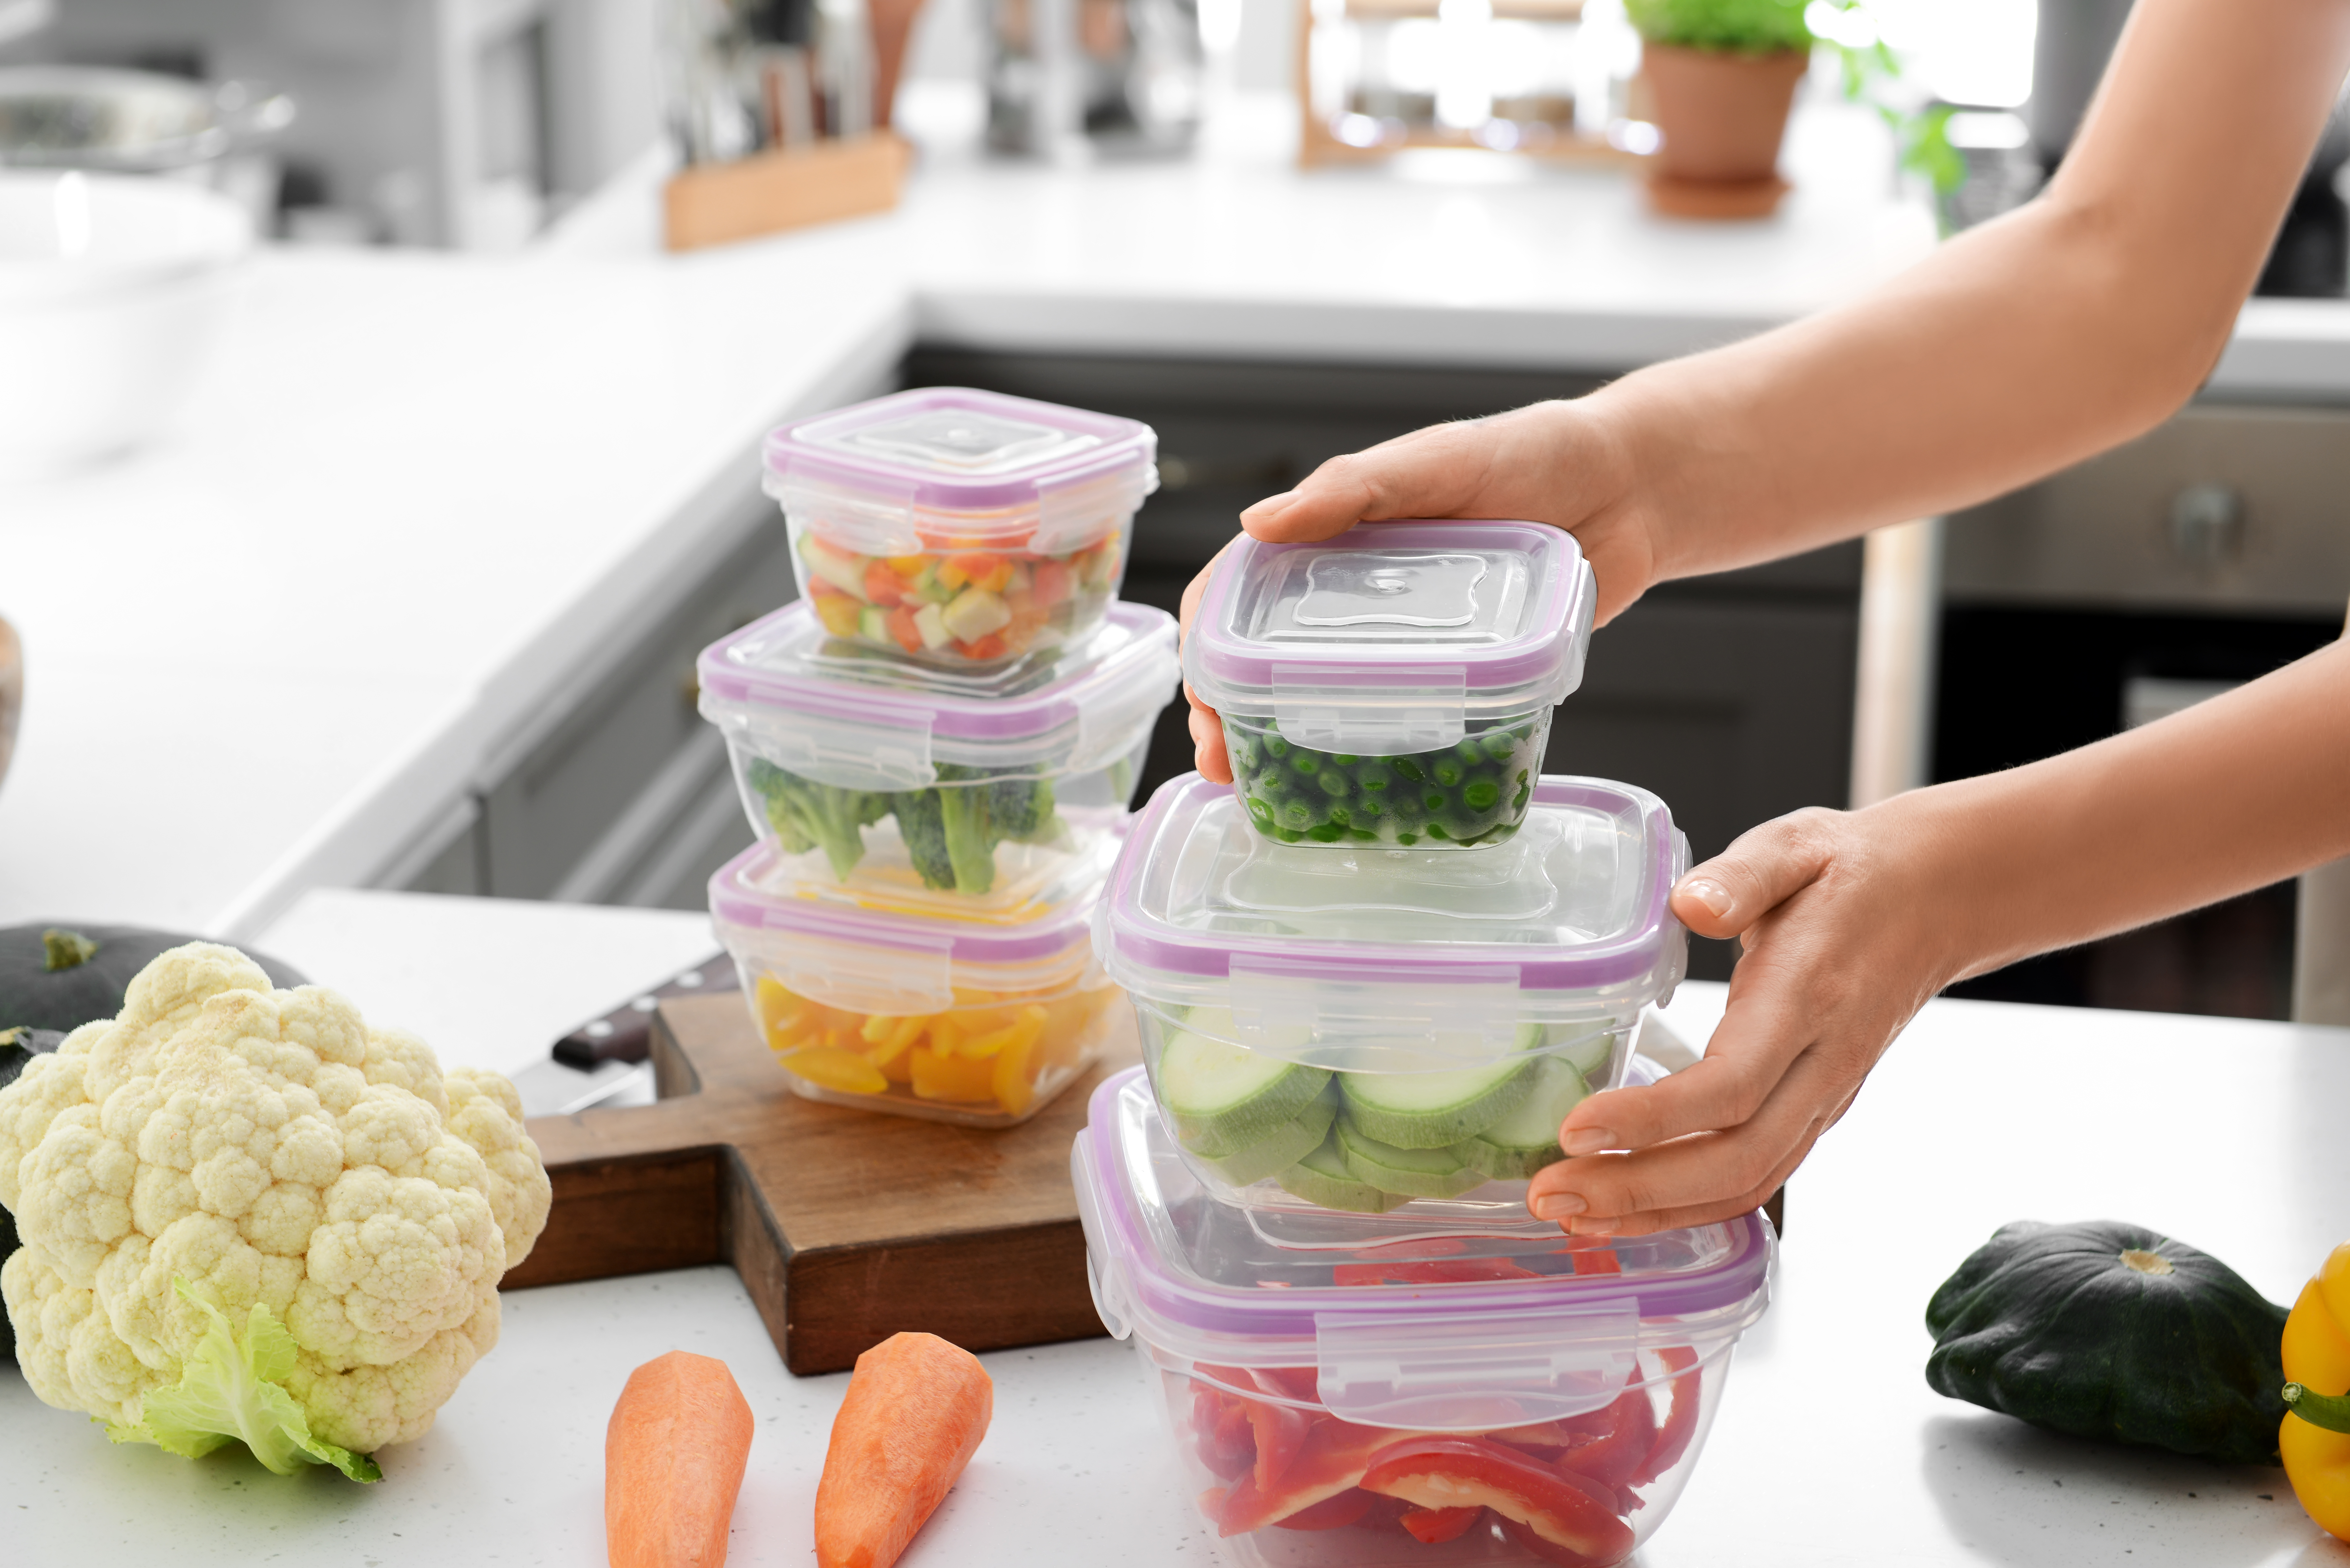 Femme tenant une pile de récipients en plastique contenant des légumes frais à congeler à une table dans la cuisine | Source : Shutterstock